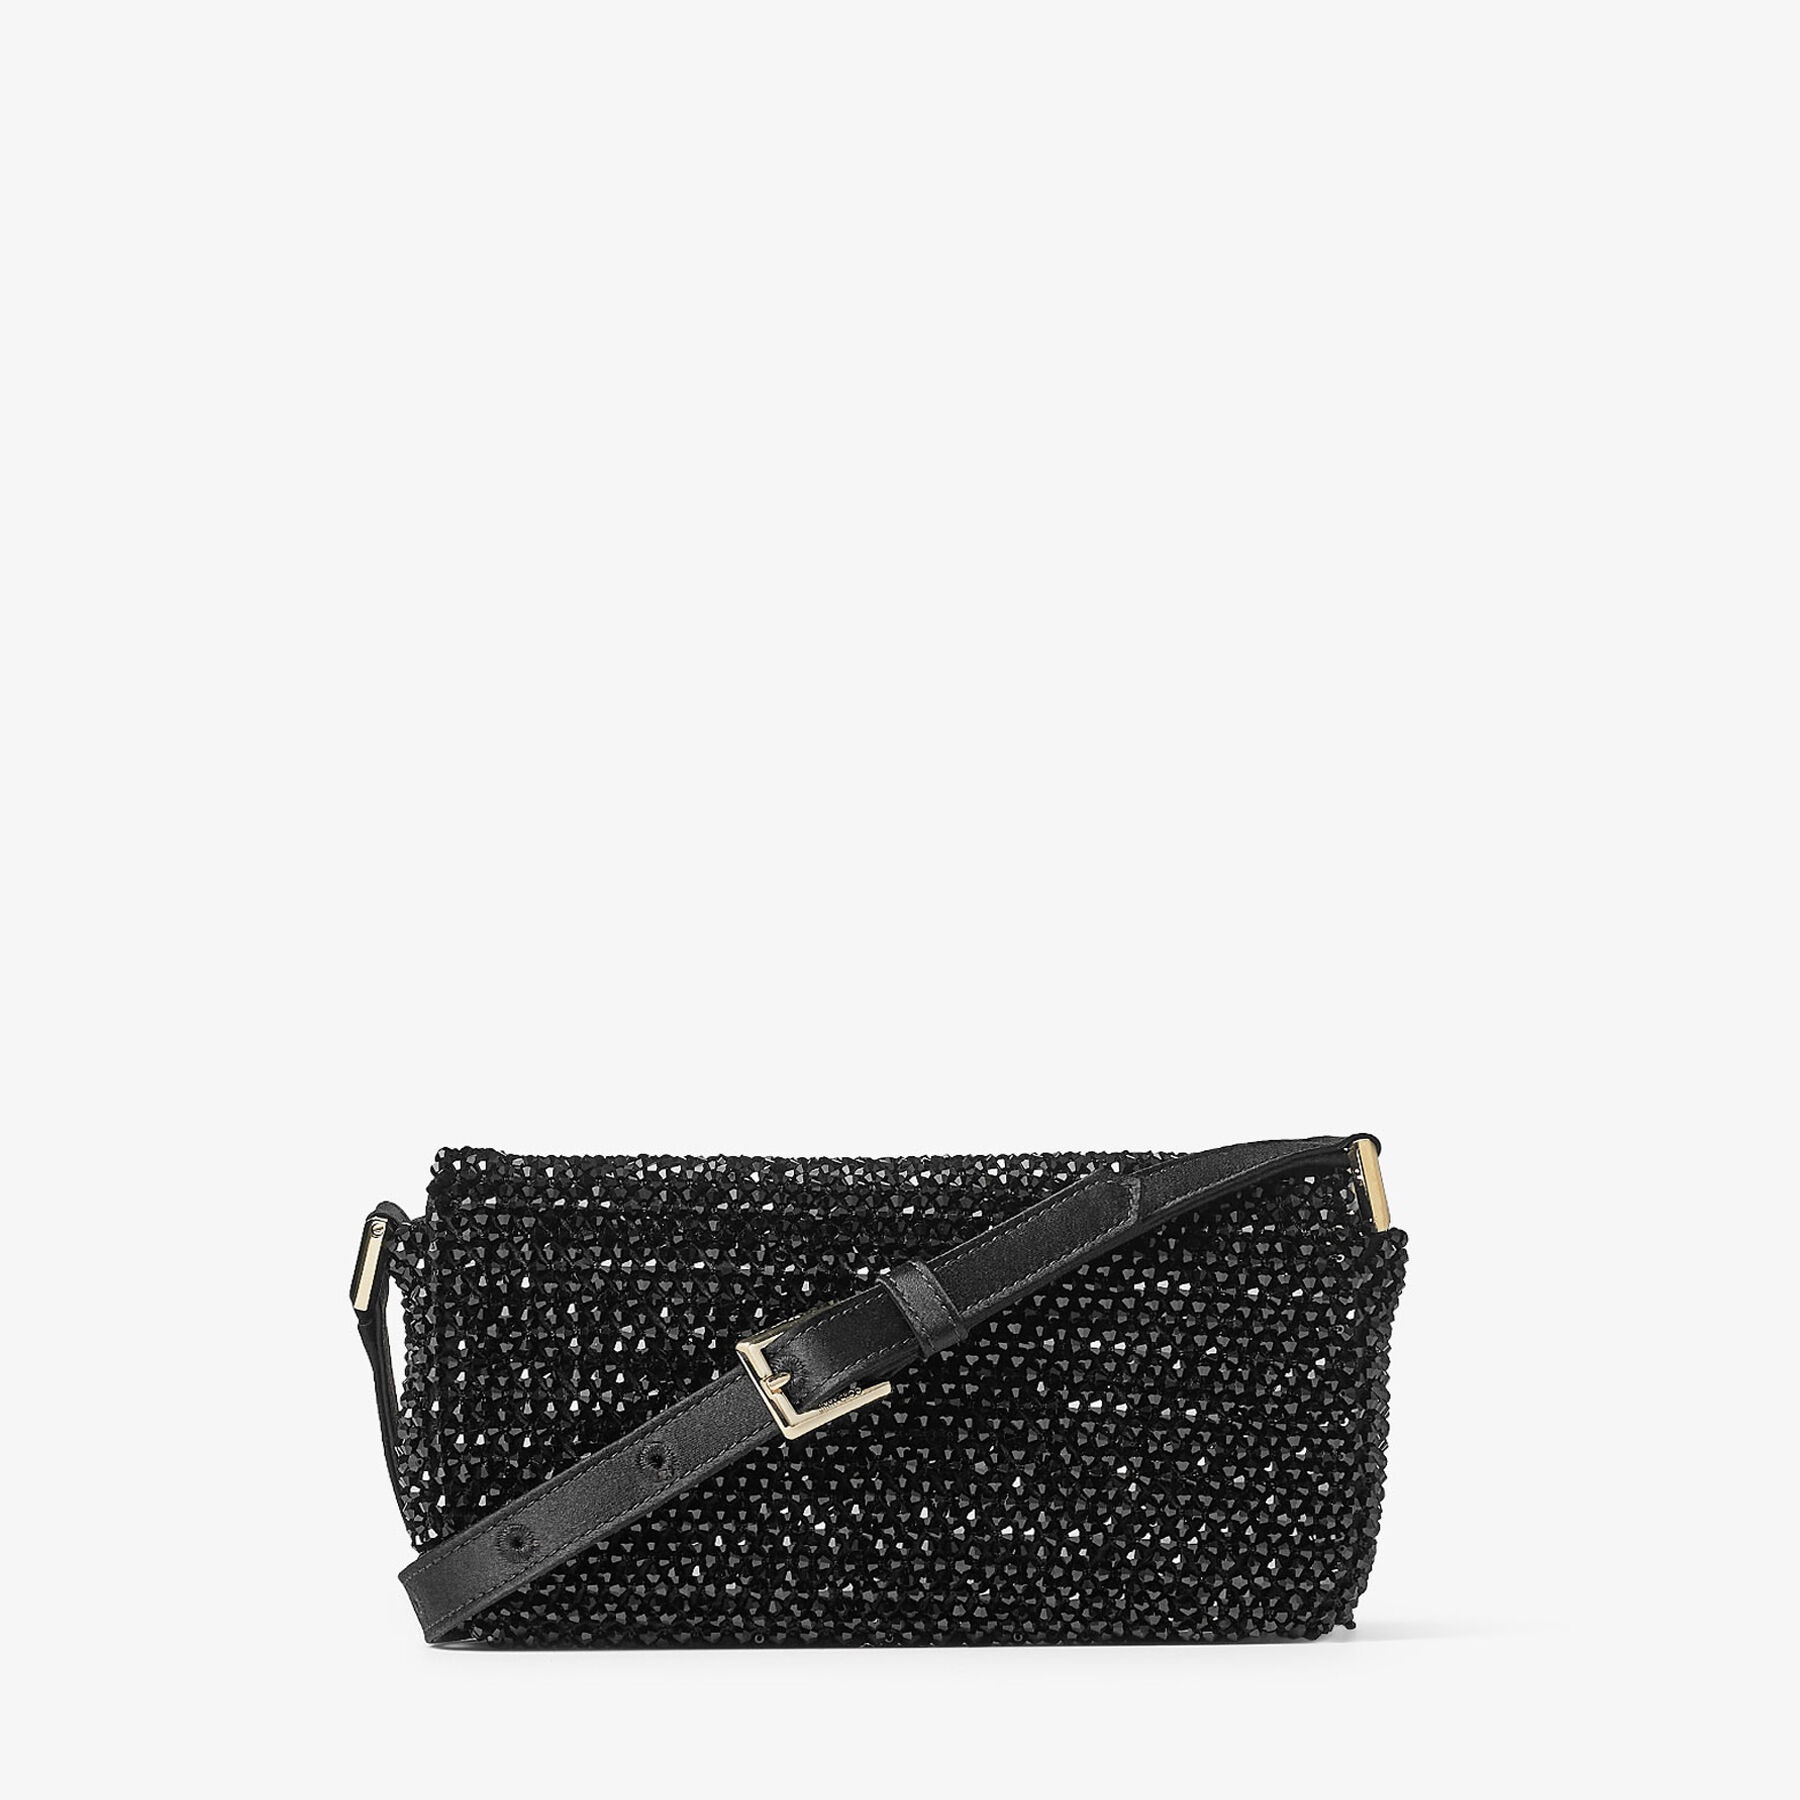 Avenue Mini Shoulder
Black Satin Mini Shoulder Bag with Crystal Fringe - 6